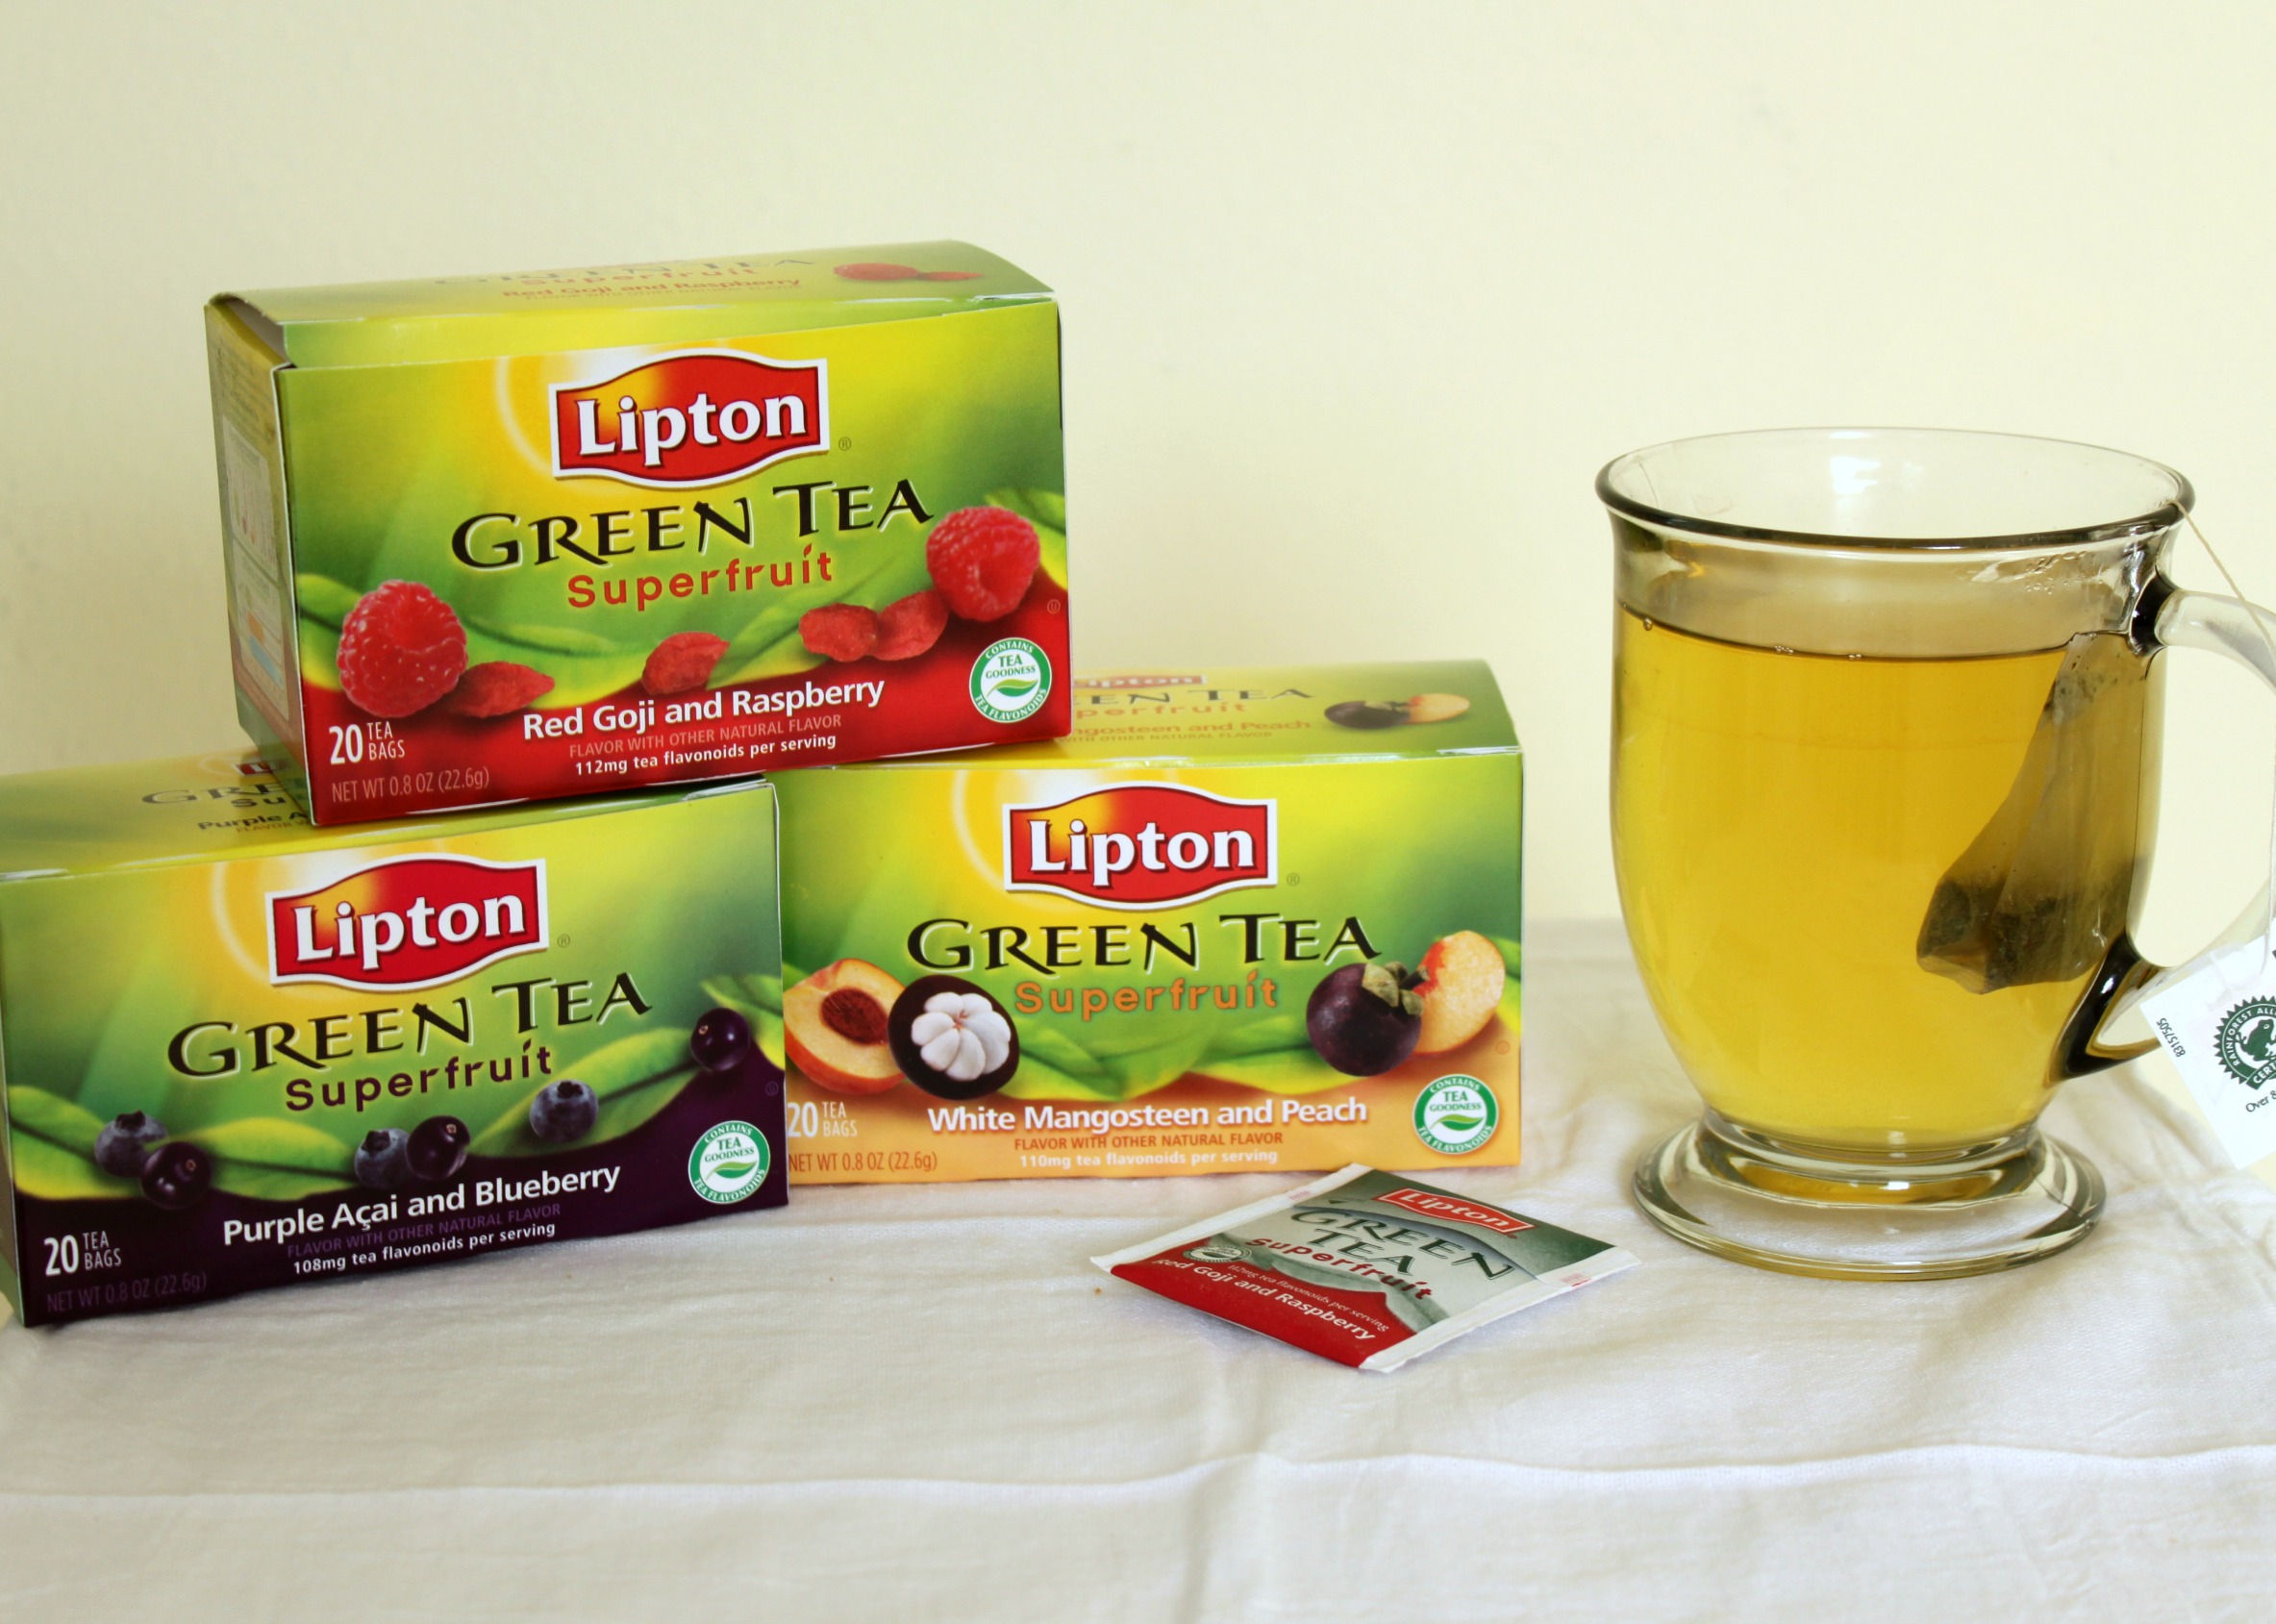 Lipton Green Tea Superfruit